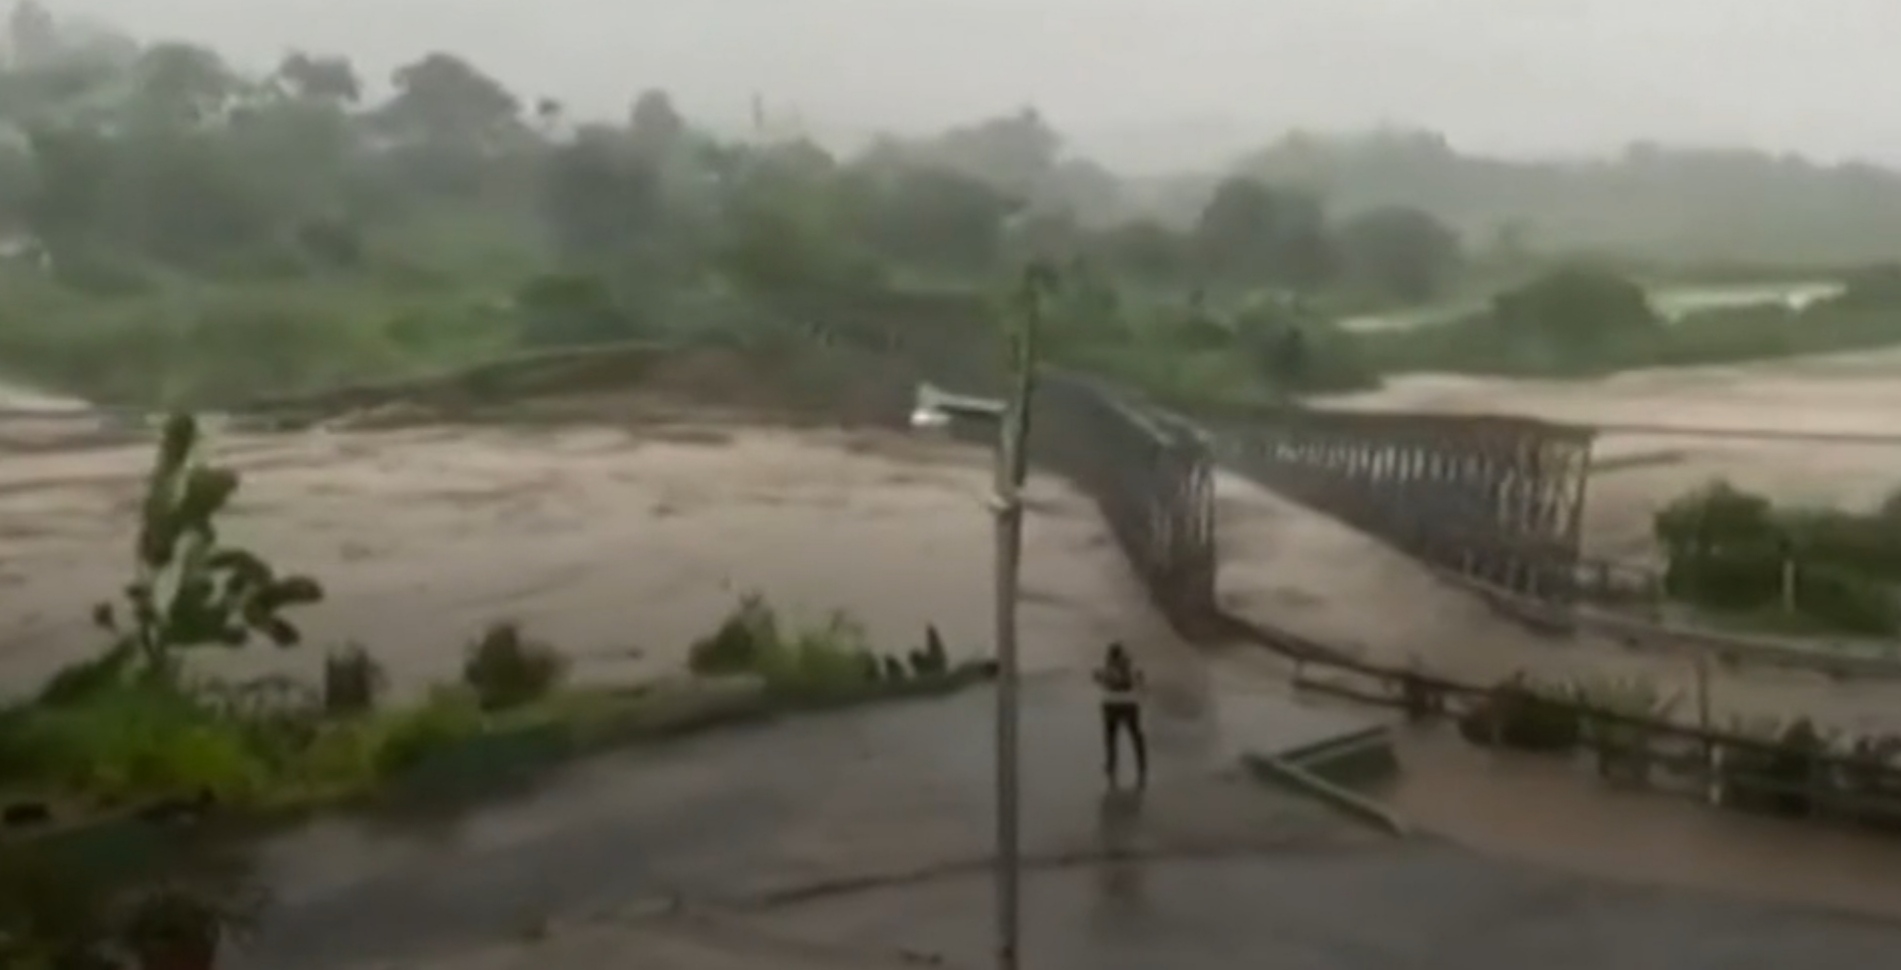 Badai fiona sebabkan pemadaman listrik di Puerto Ric